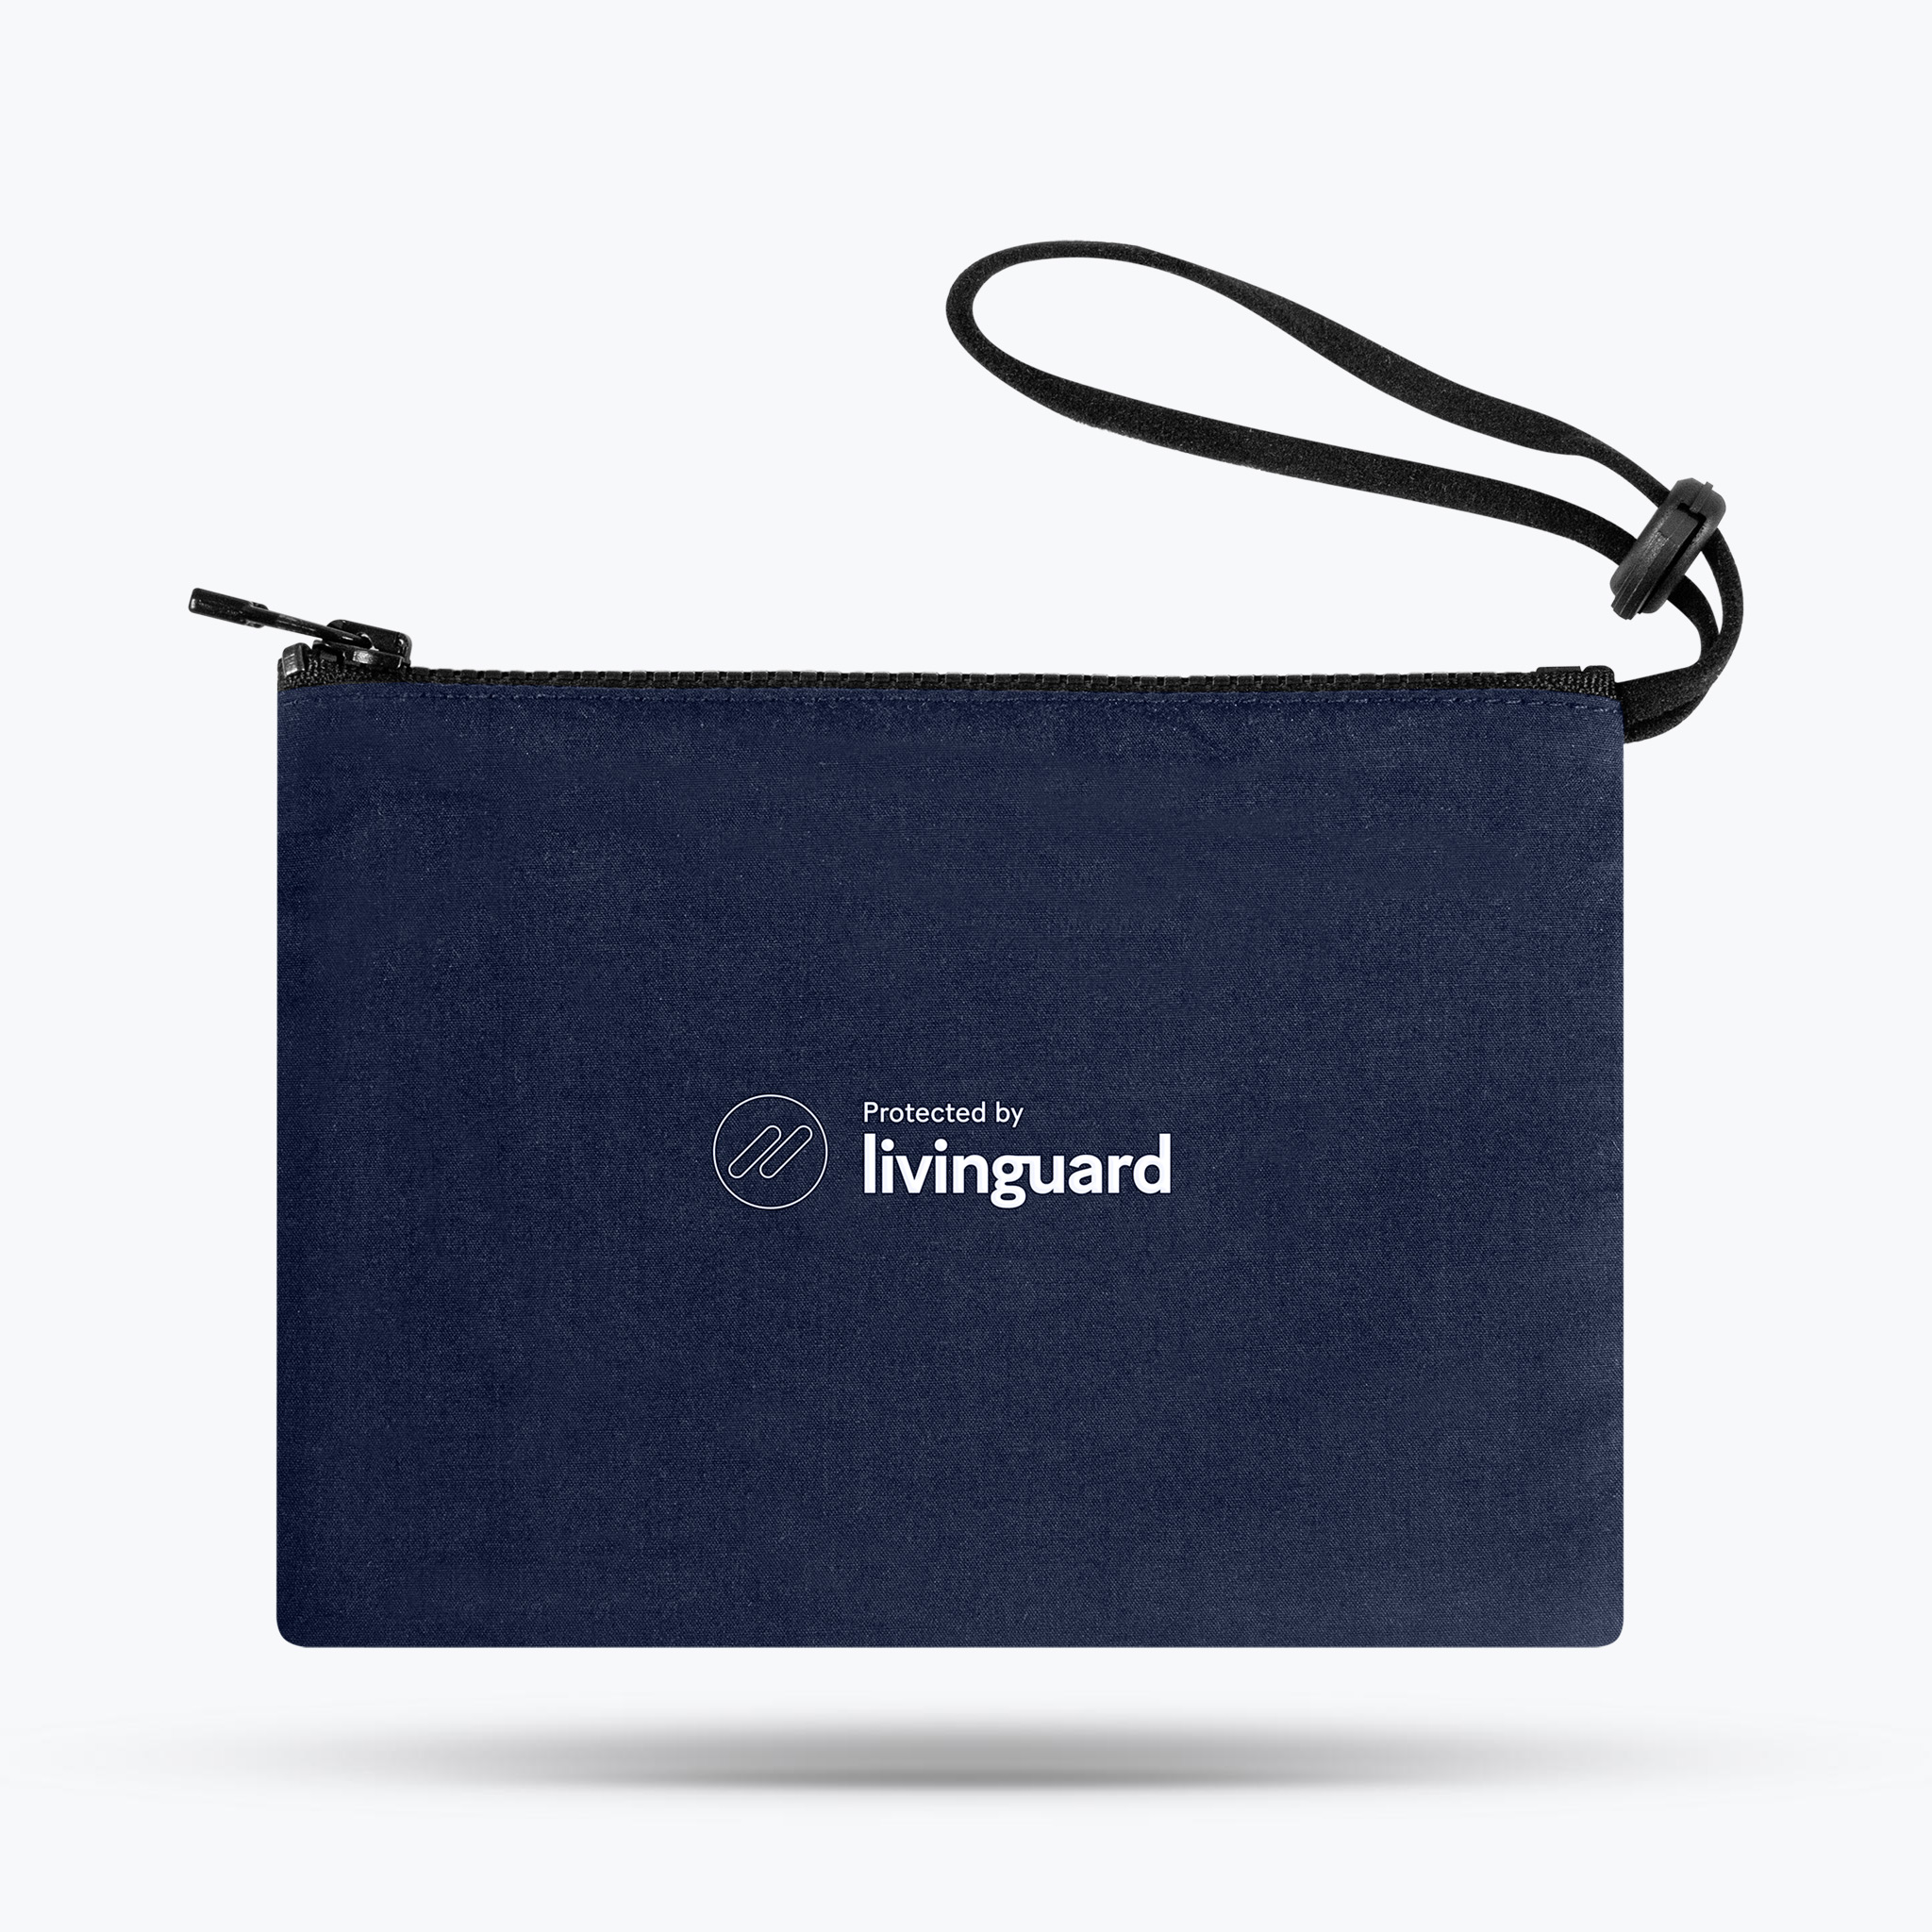 Livinguard Protectbag